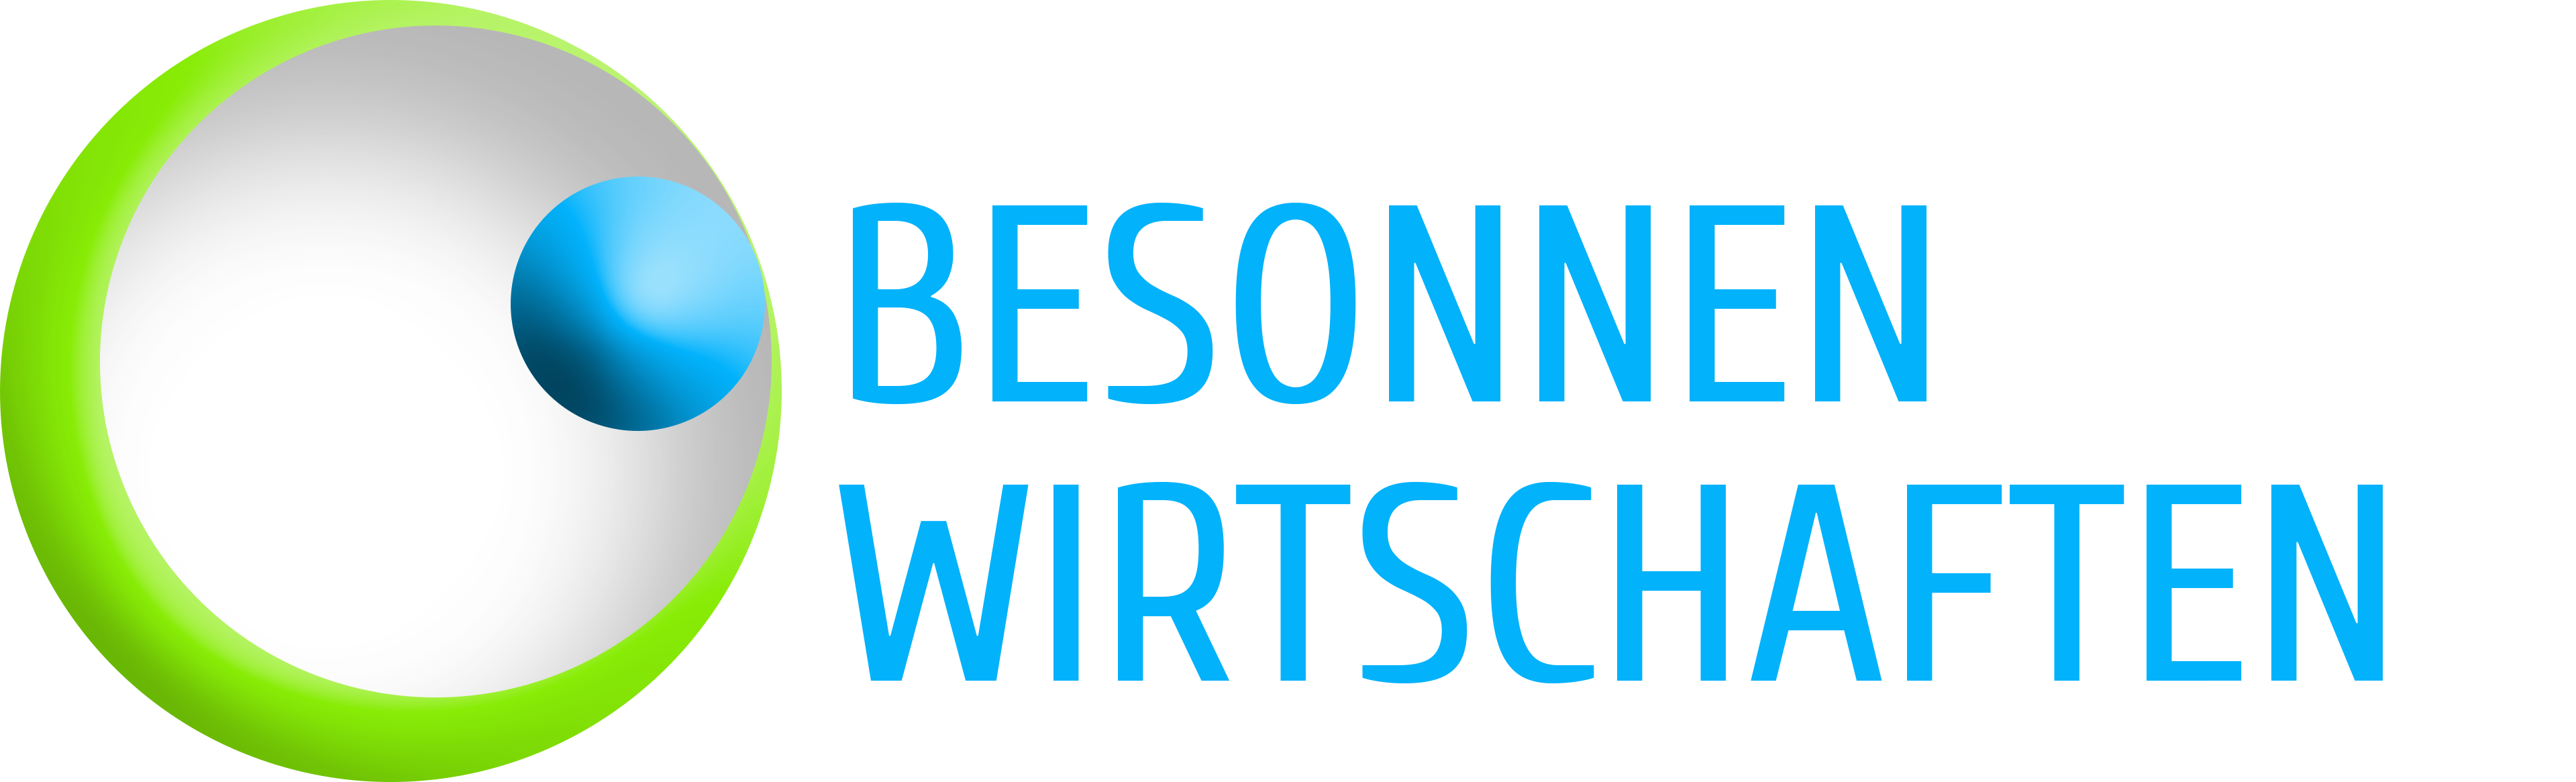 Logo_BESONNEN-WIRTSCHAFTEN.png